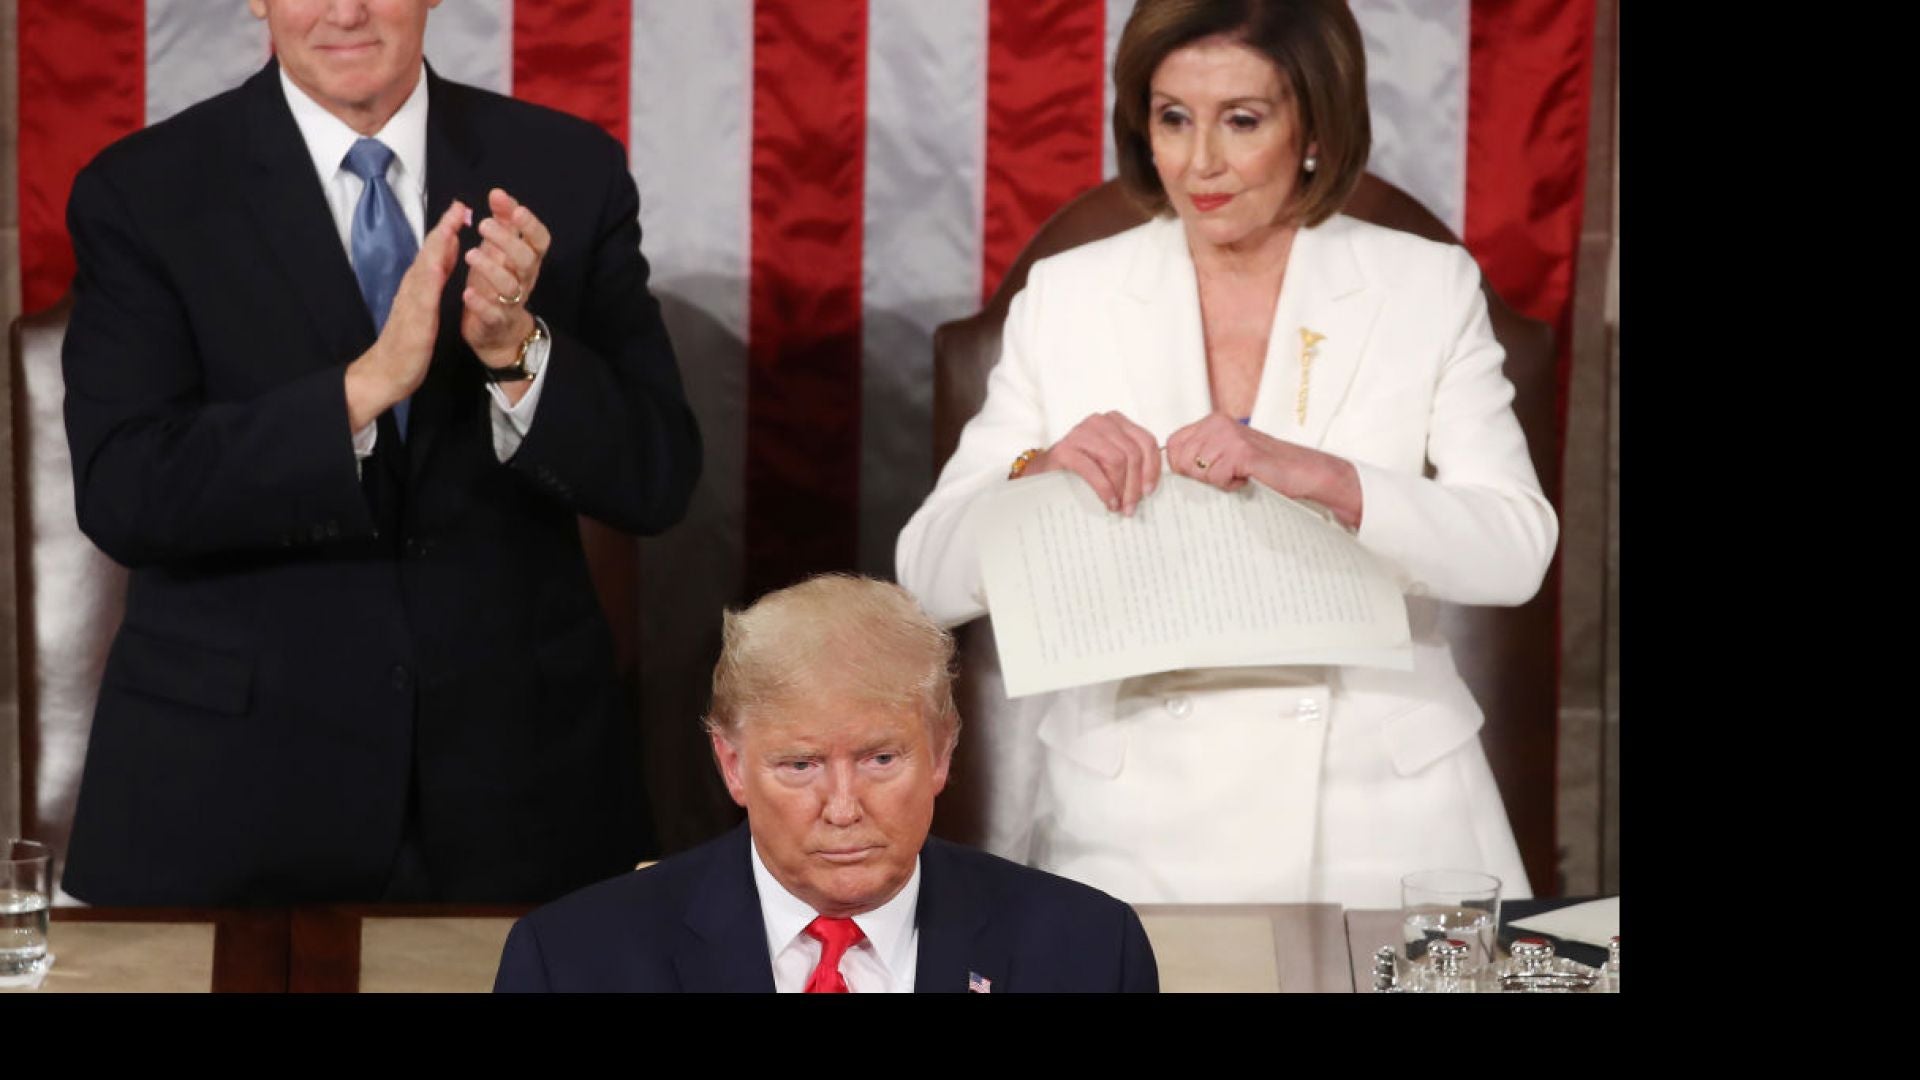 Nancy Pelosi Rips Up Trump's SOTU Speech